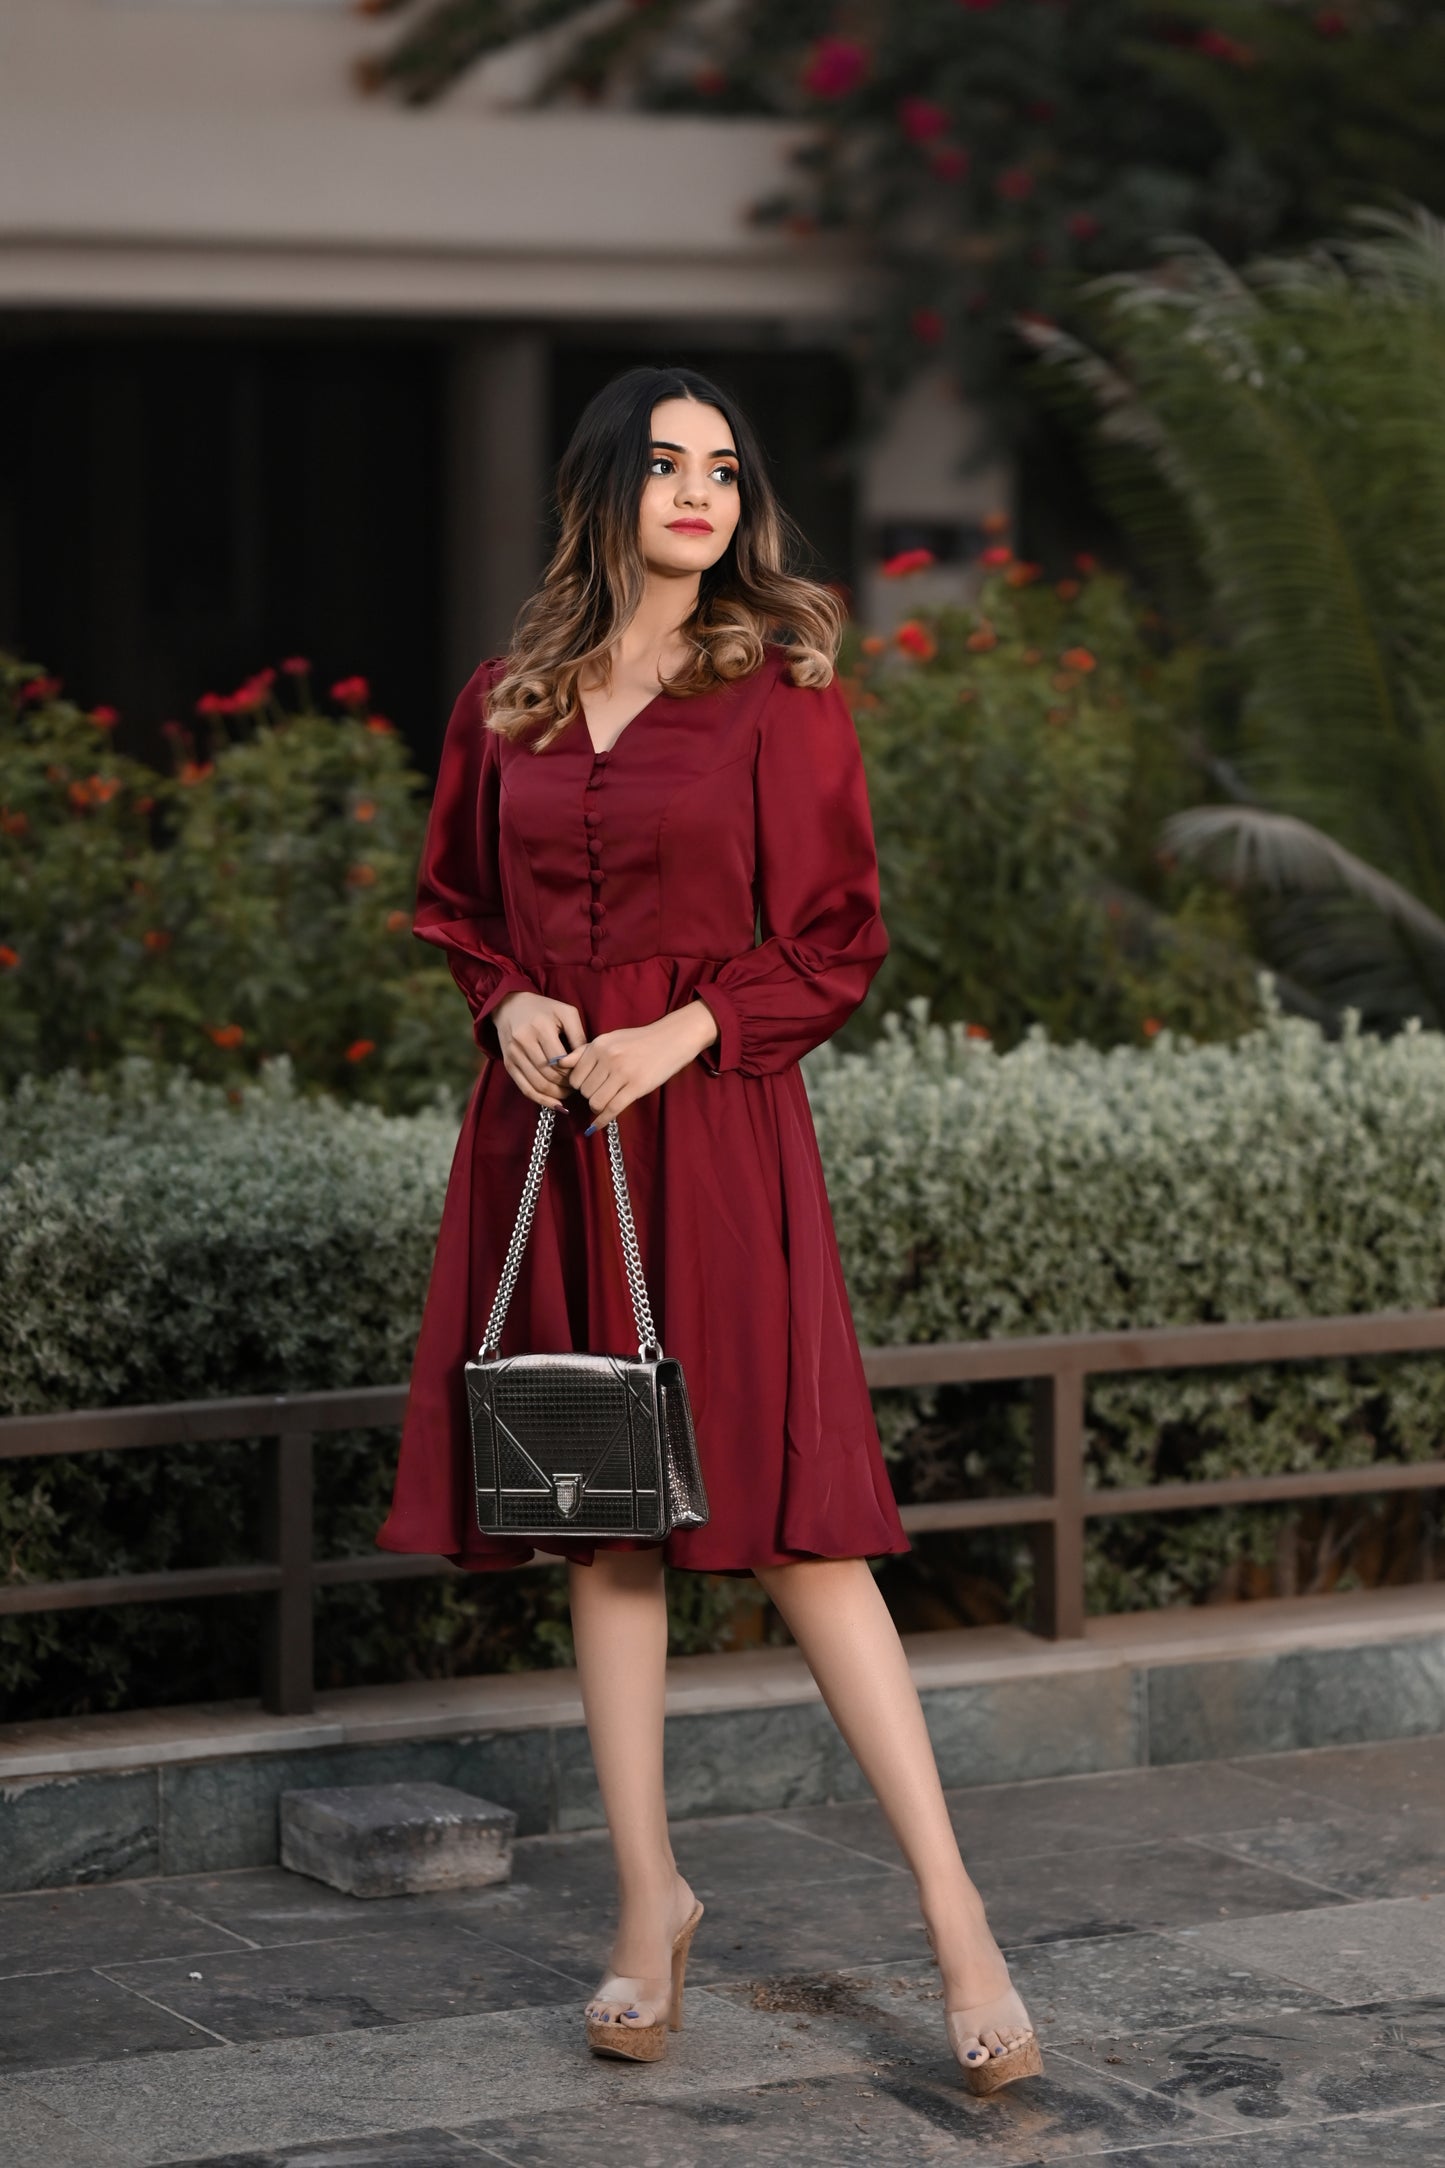 Adaa Khan Blings It On In An Embellished Maroon Dress